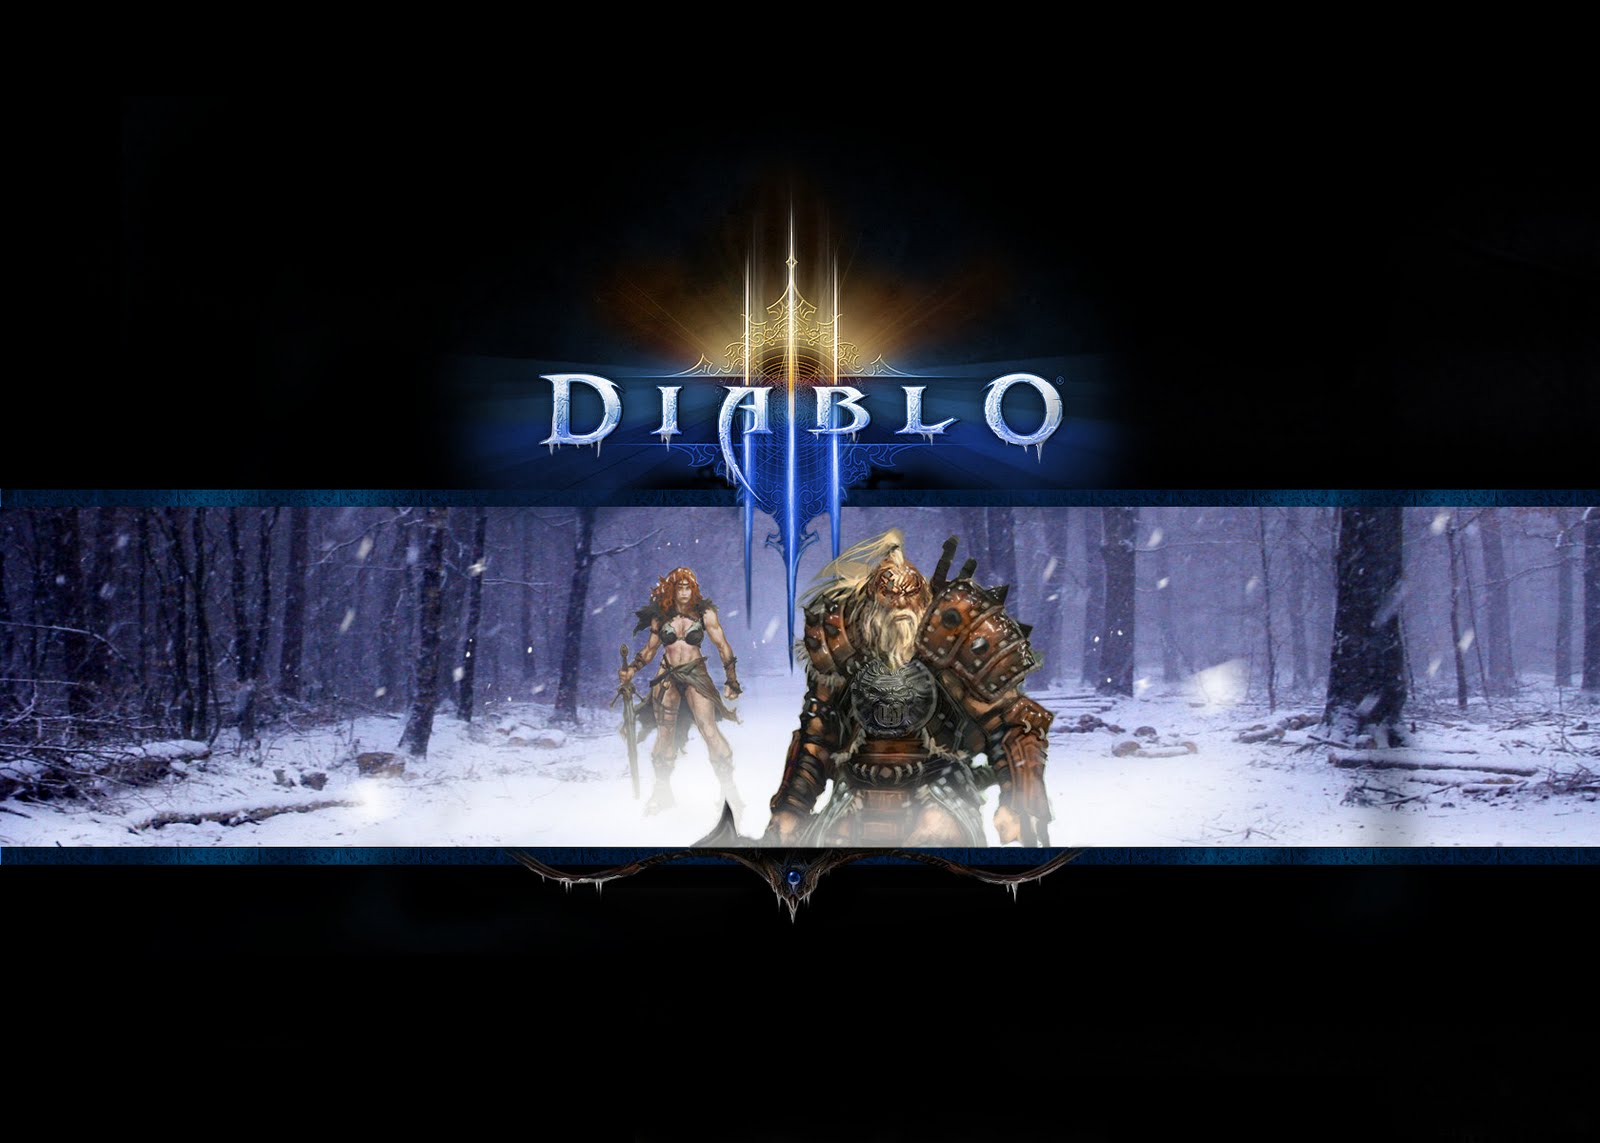 Fondos de pantalla para diablo 3 (Wallpapers HD) Diablo16